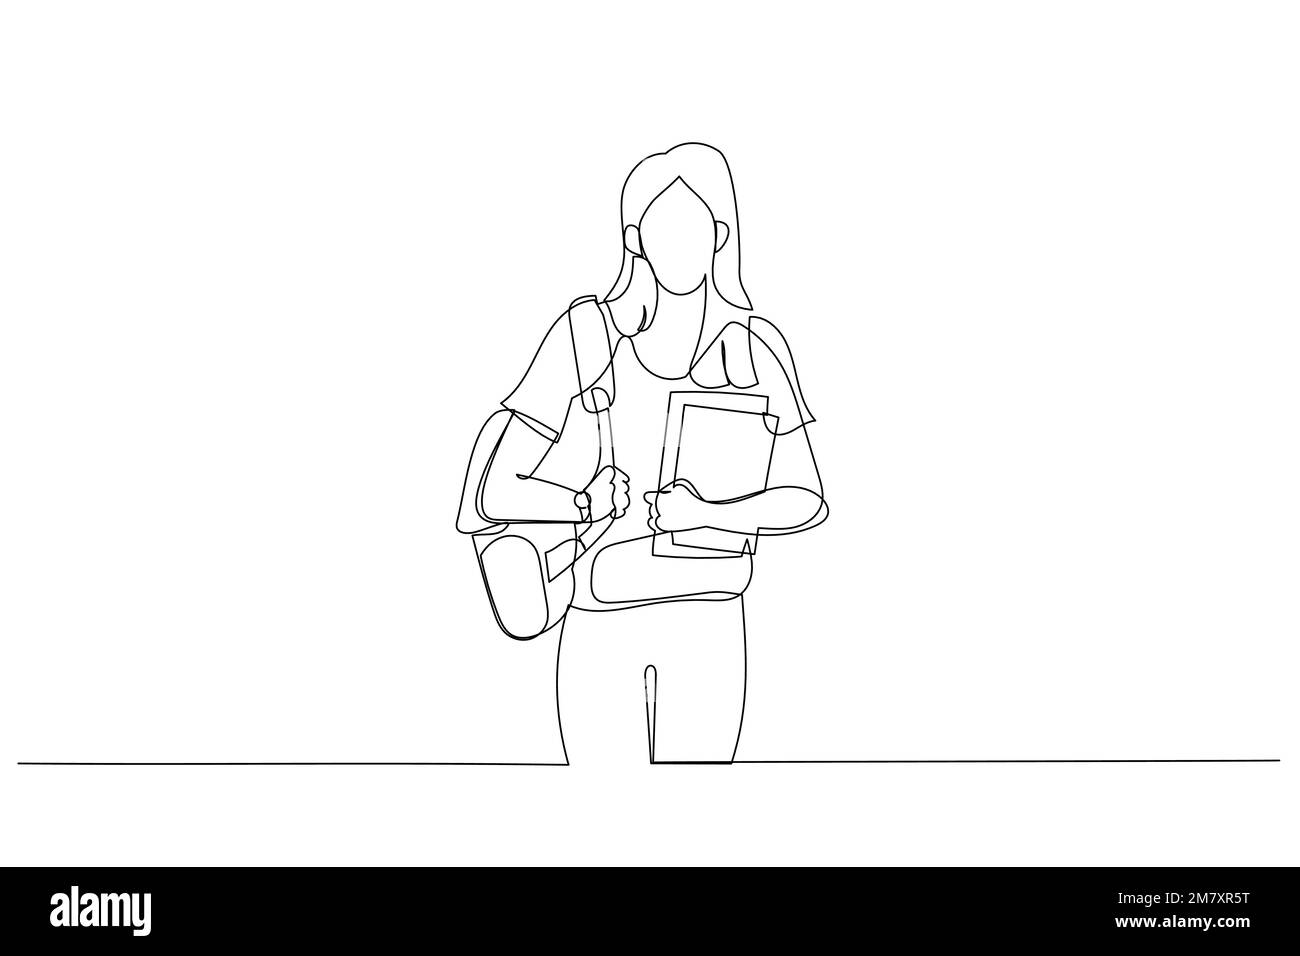 Zeichnung einer Studentin, die einen Laptop hält und in die Kamera schaut. Strichgrafik-Stil Stock Vektor